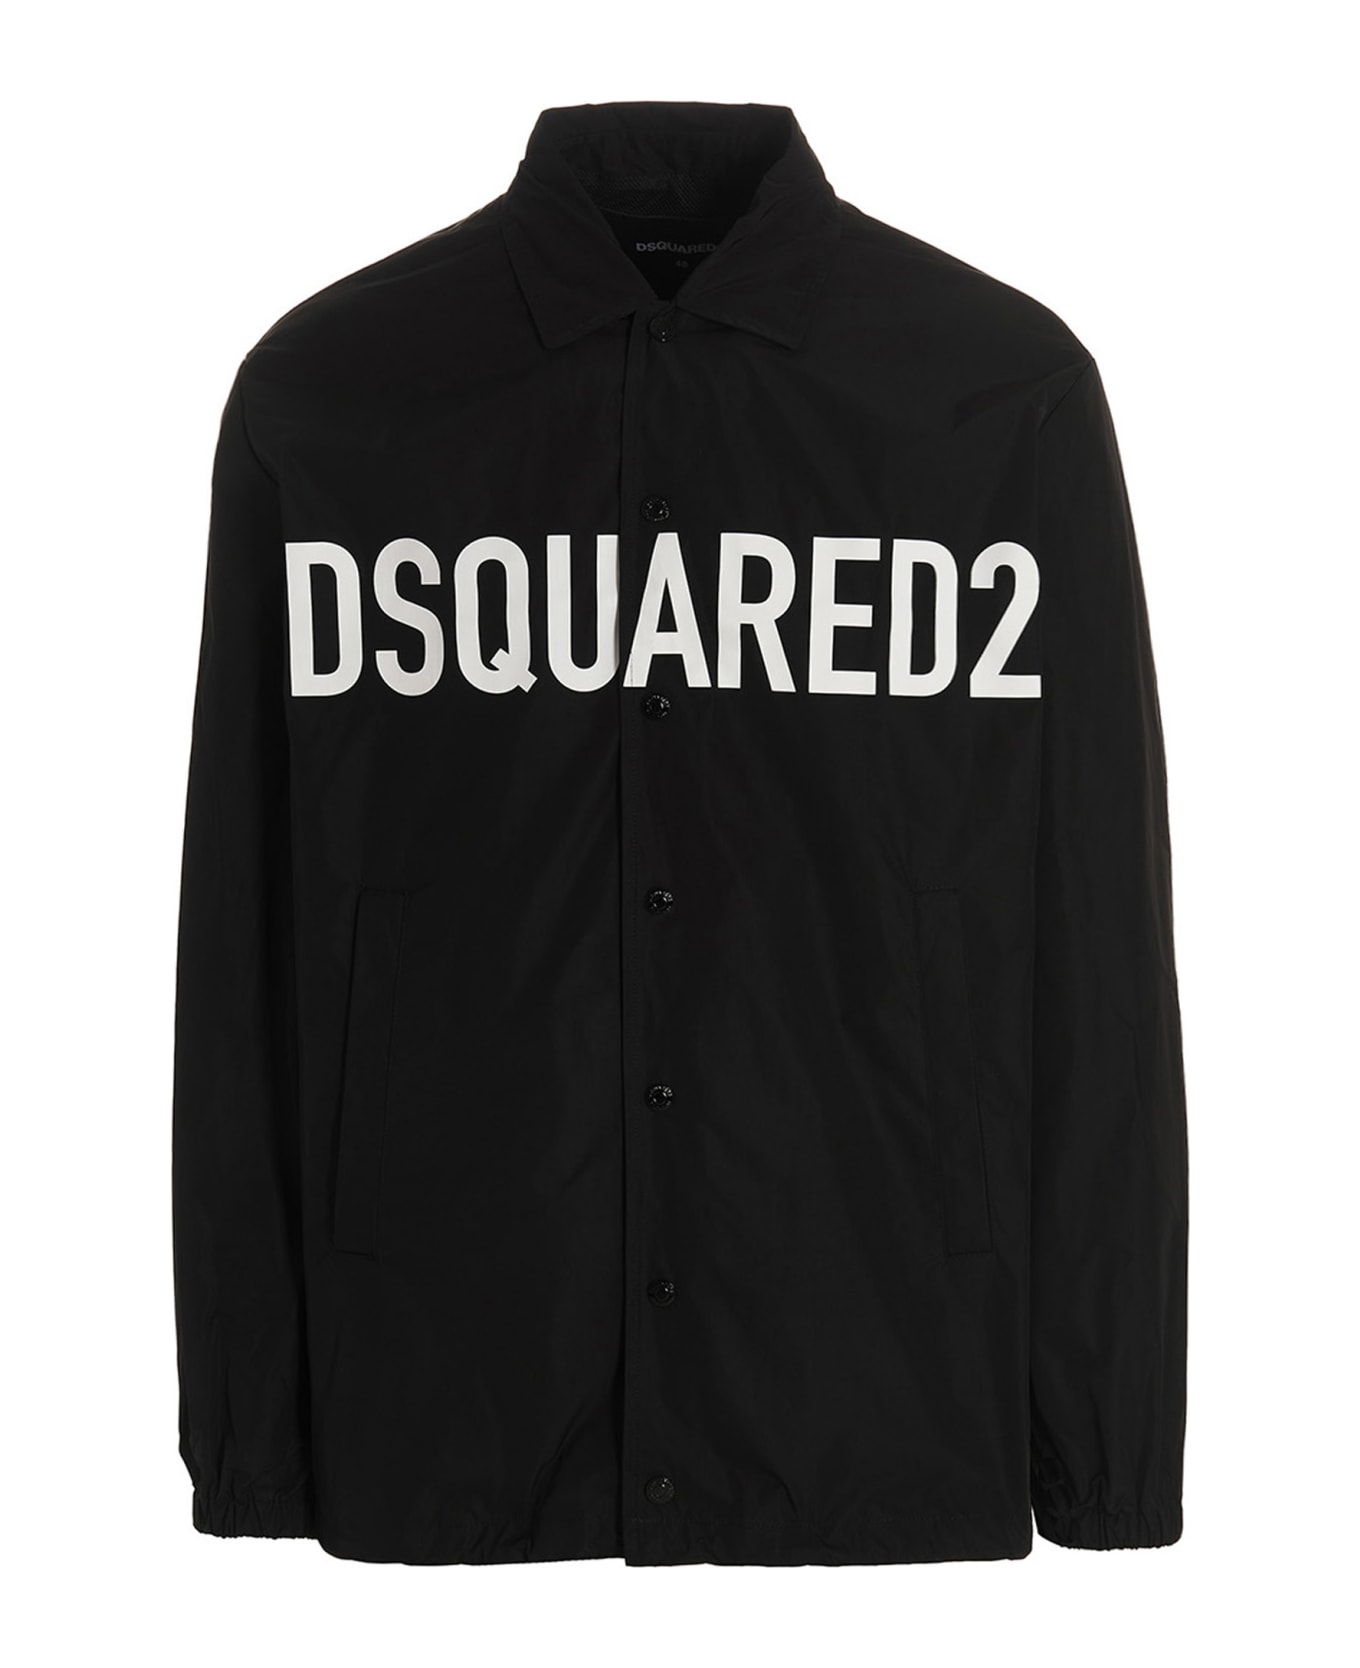 Dsquared2 'dsquared2' Overshirt - Black  